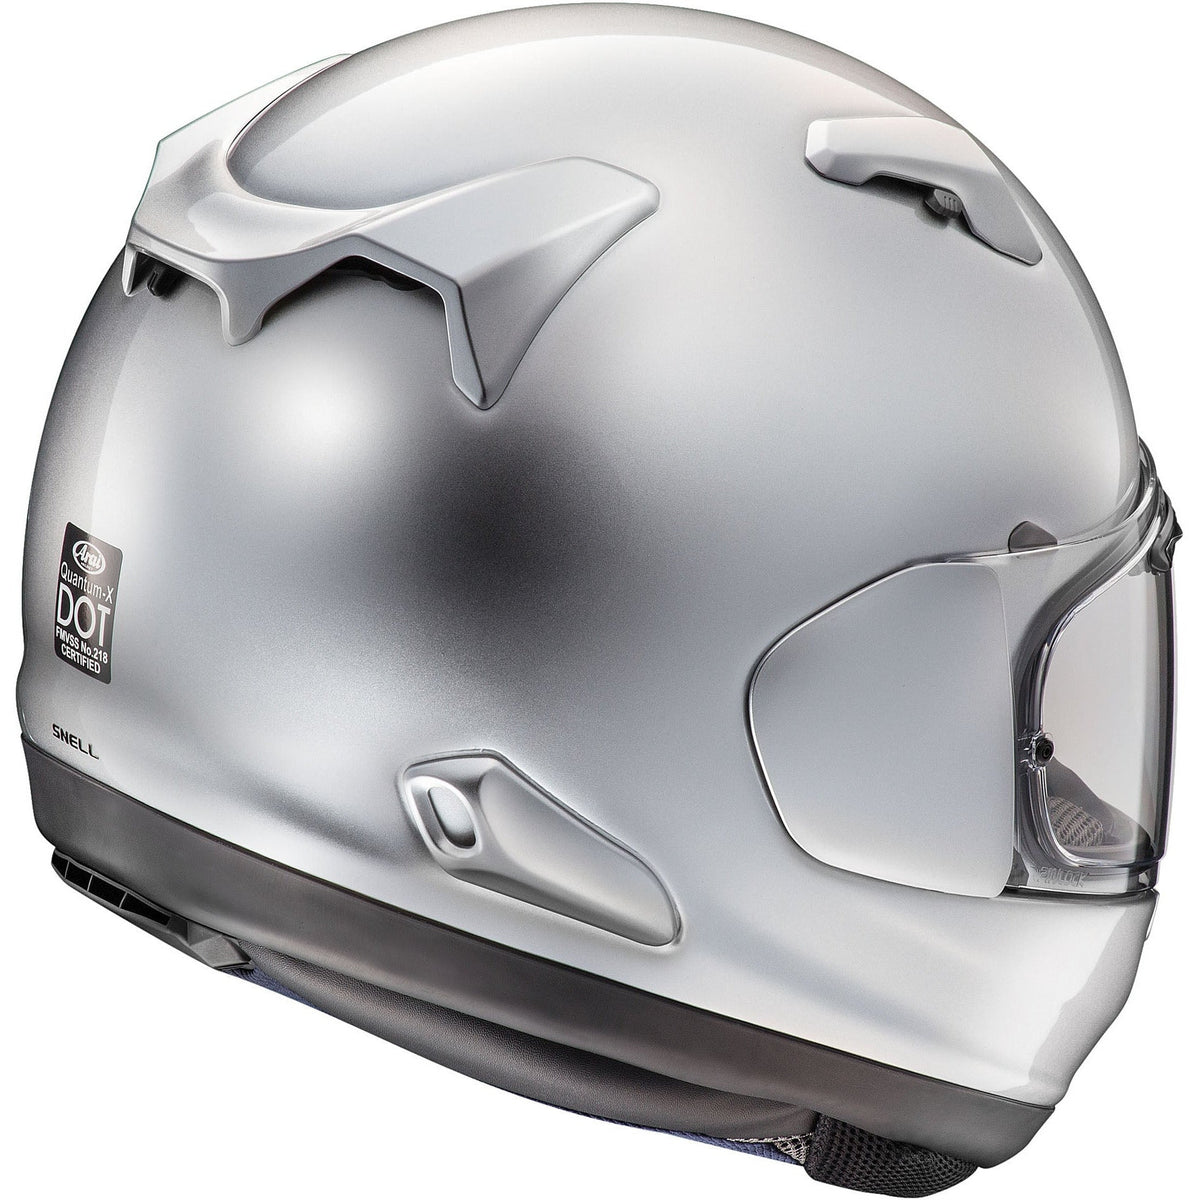 Quantum-X Helmet (Aluminum Silver)